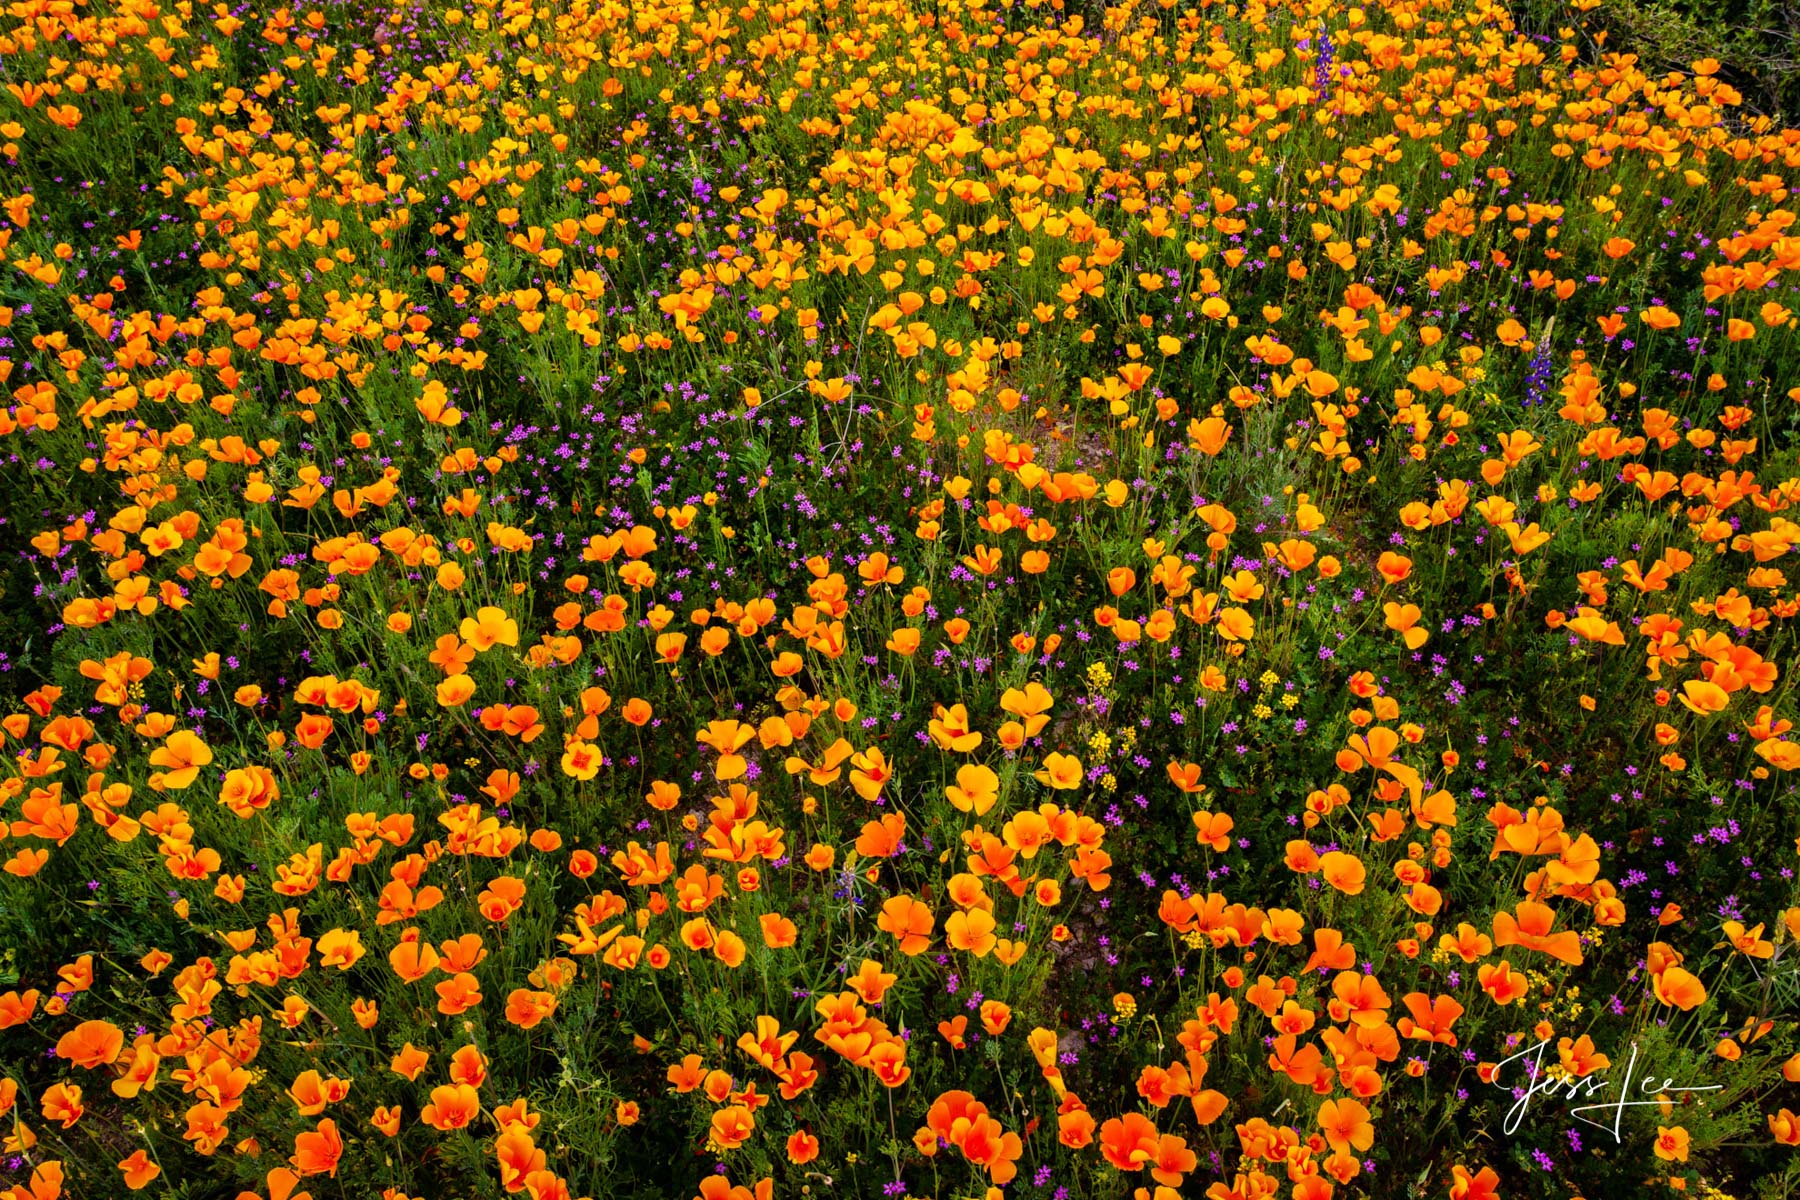 Desert flowers blooming in Arizona's desert landscape. 